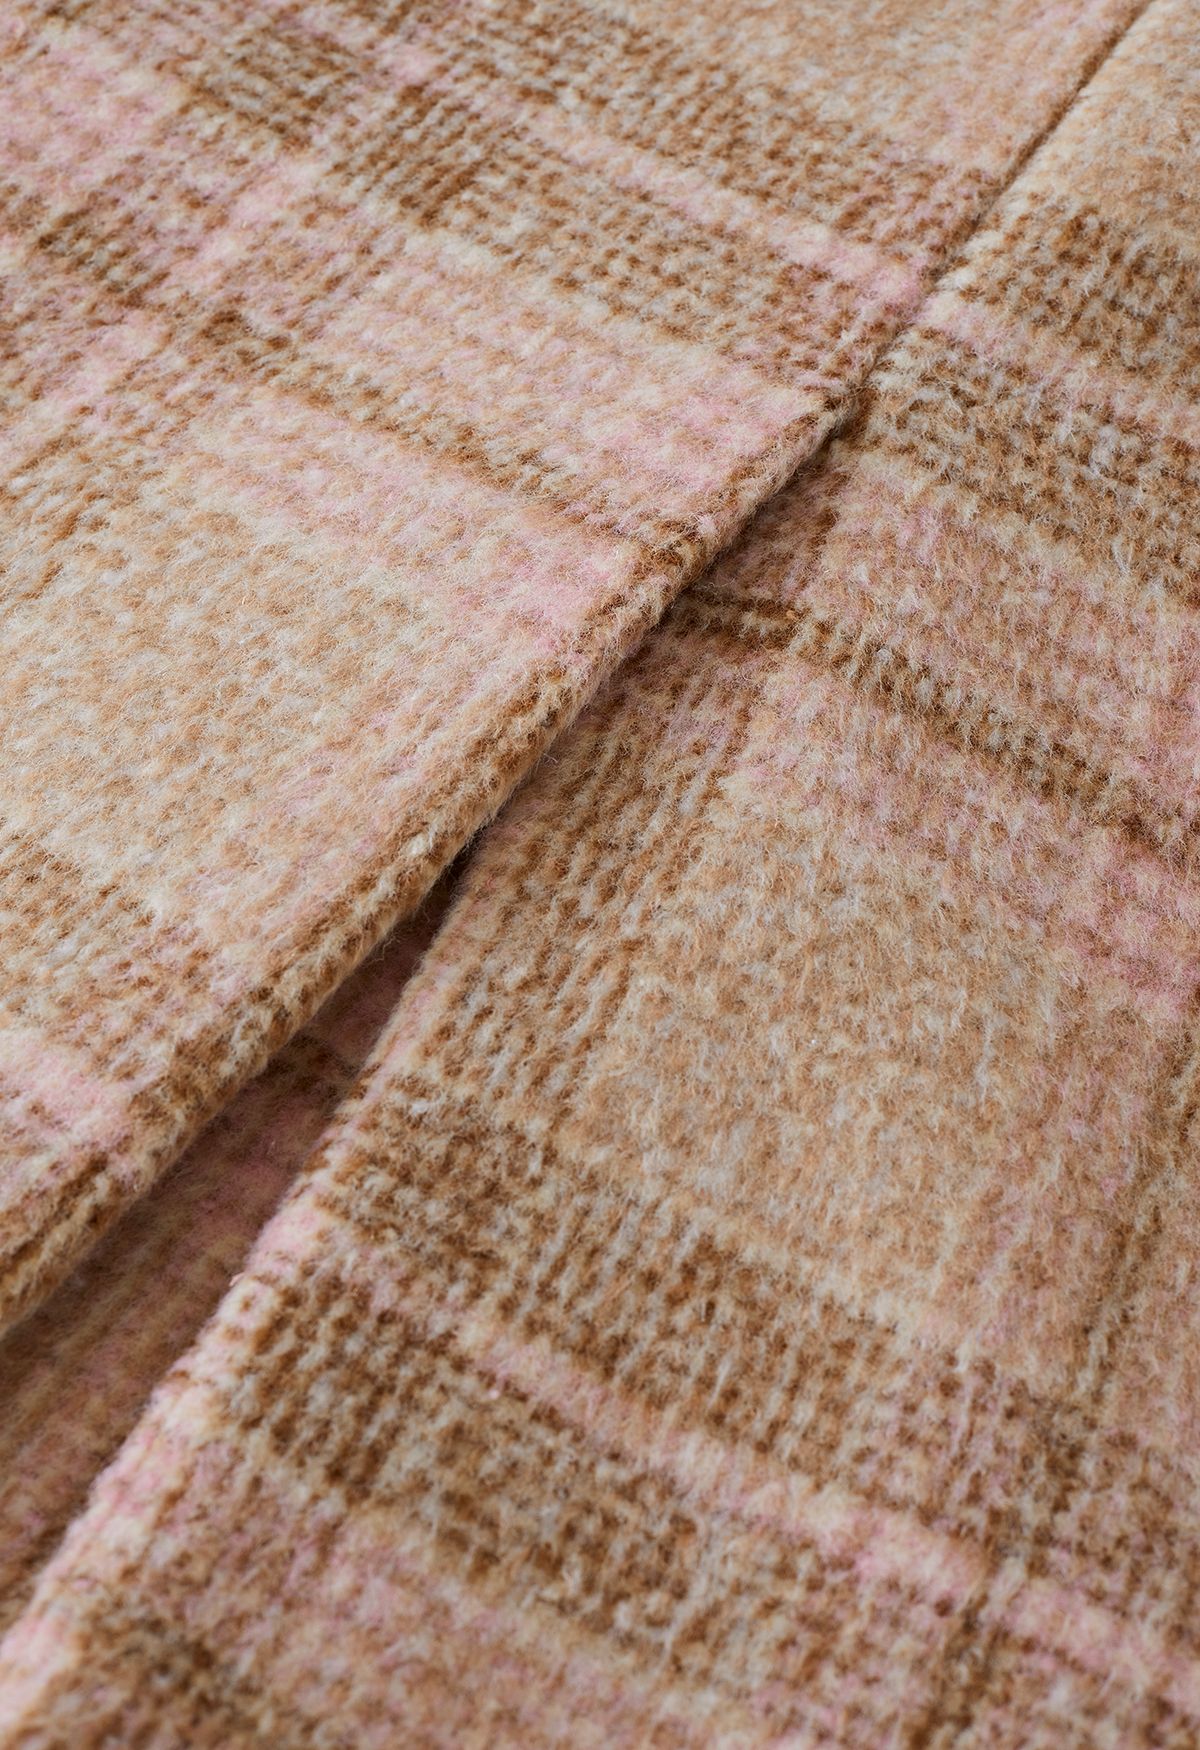 Plaid Peaked Lapel Wool-Blend Longline Coat in Tan